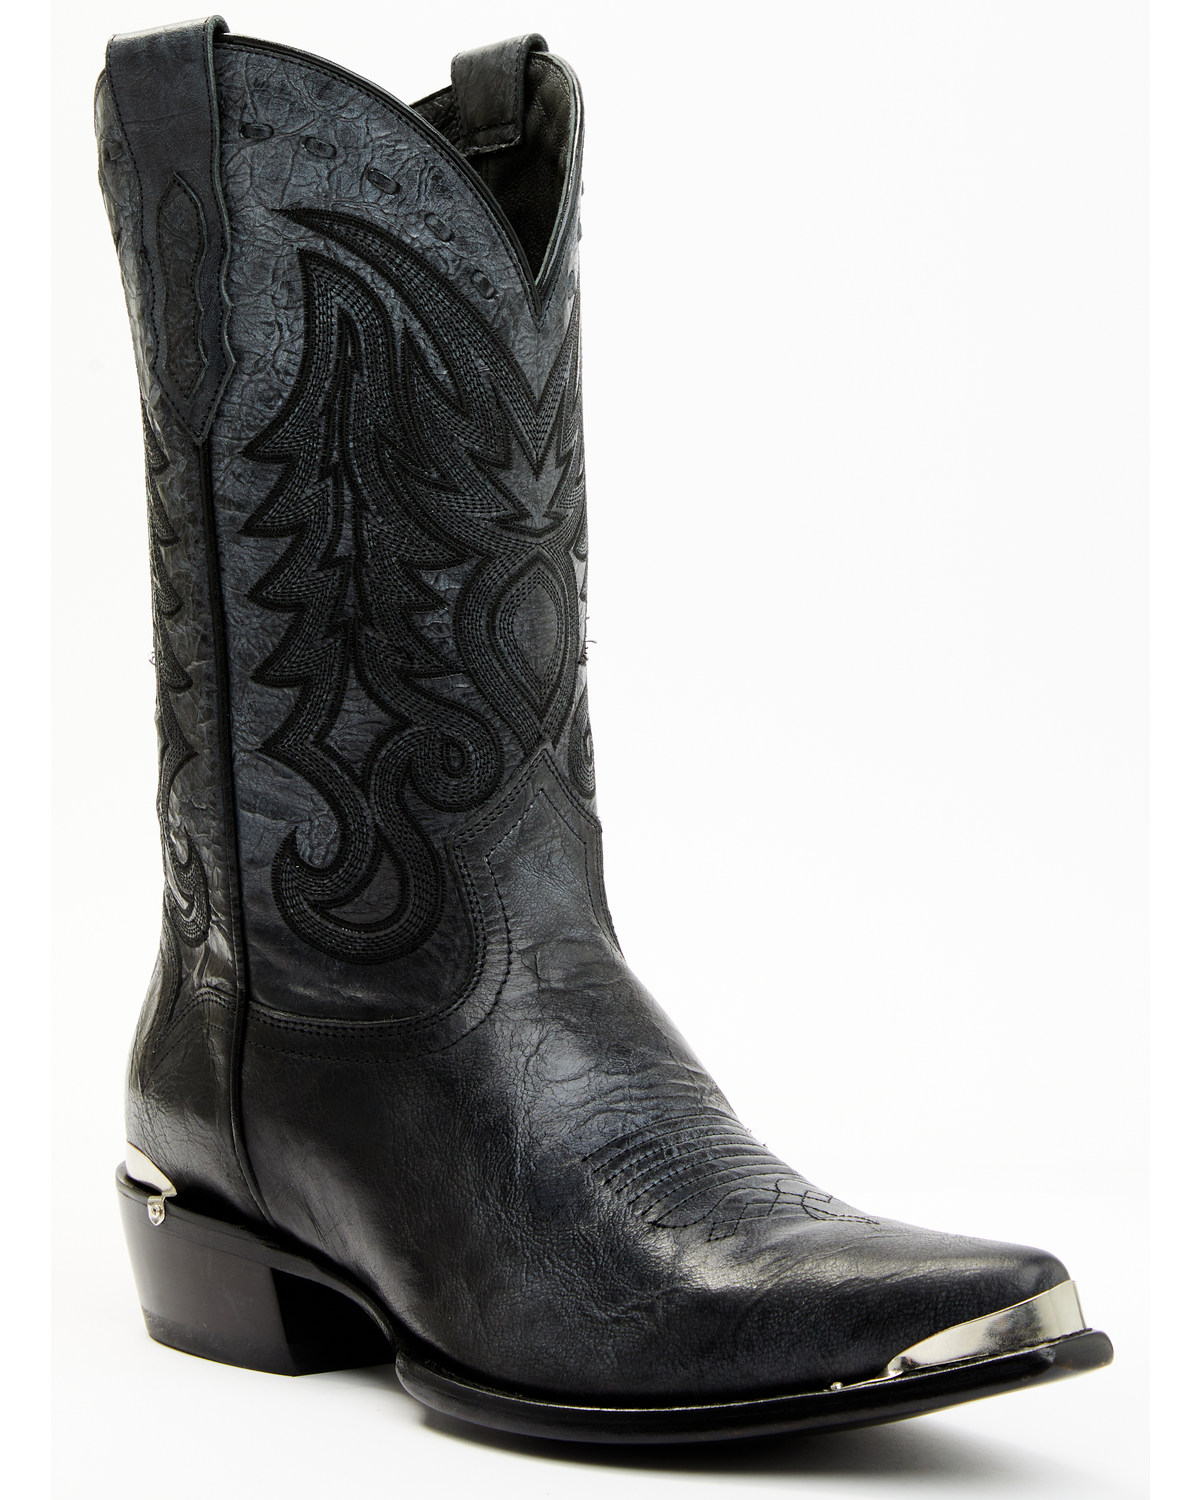 Moonshine Spirit Men's Buckley Western Boots - Snip Toe